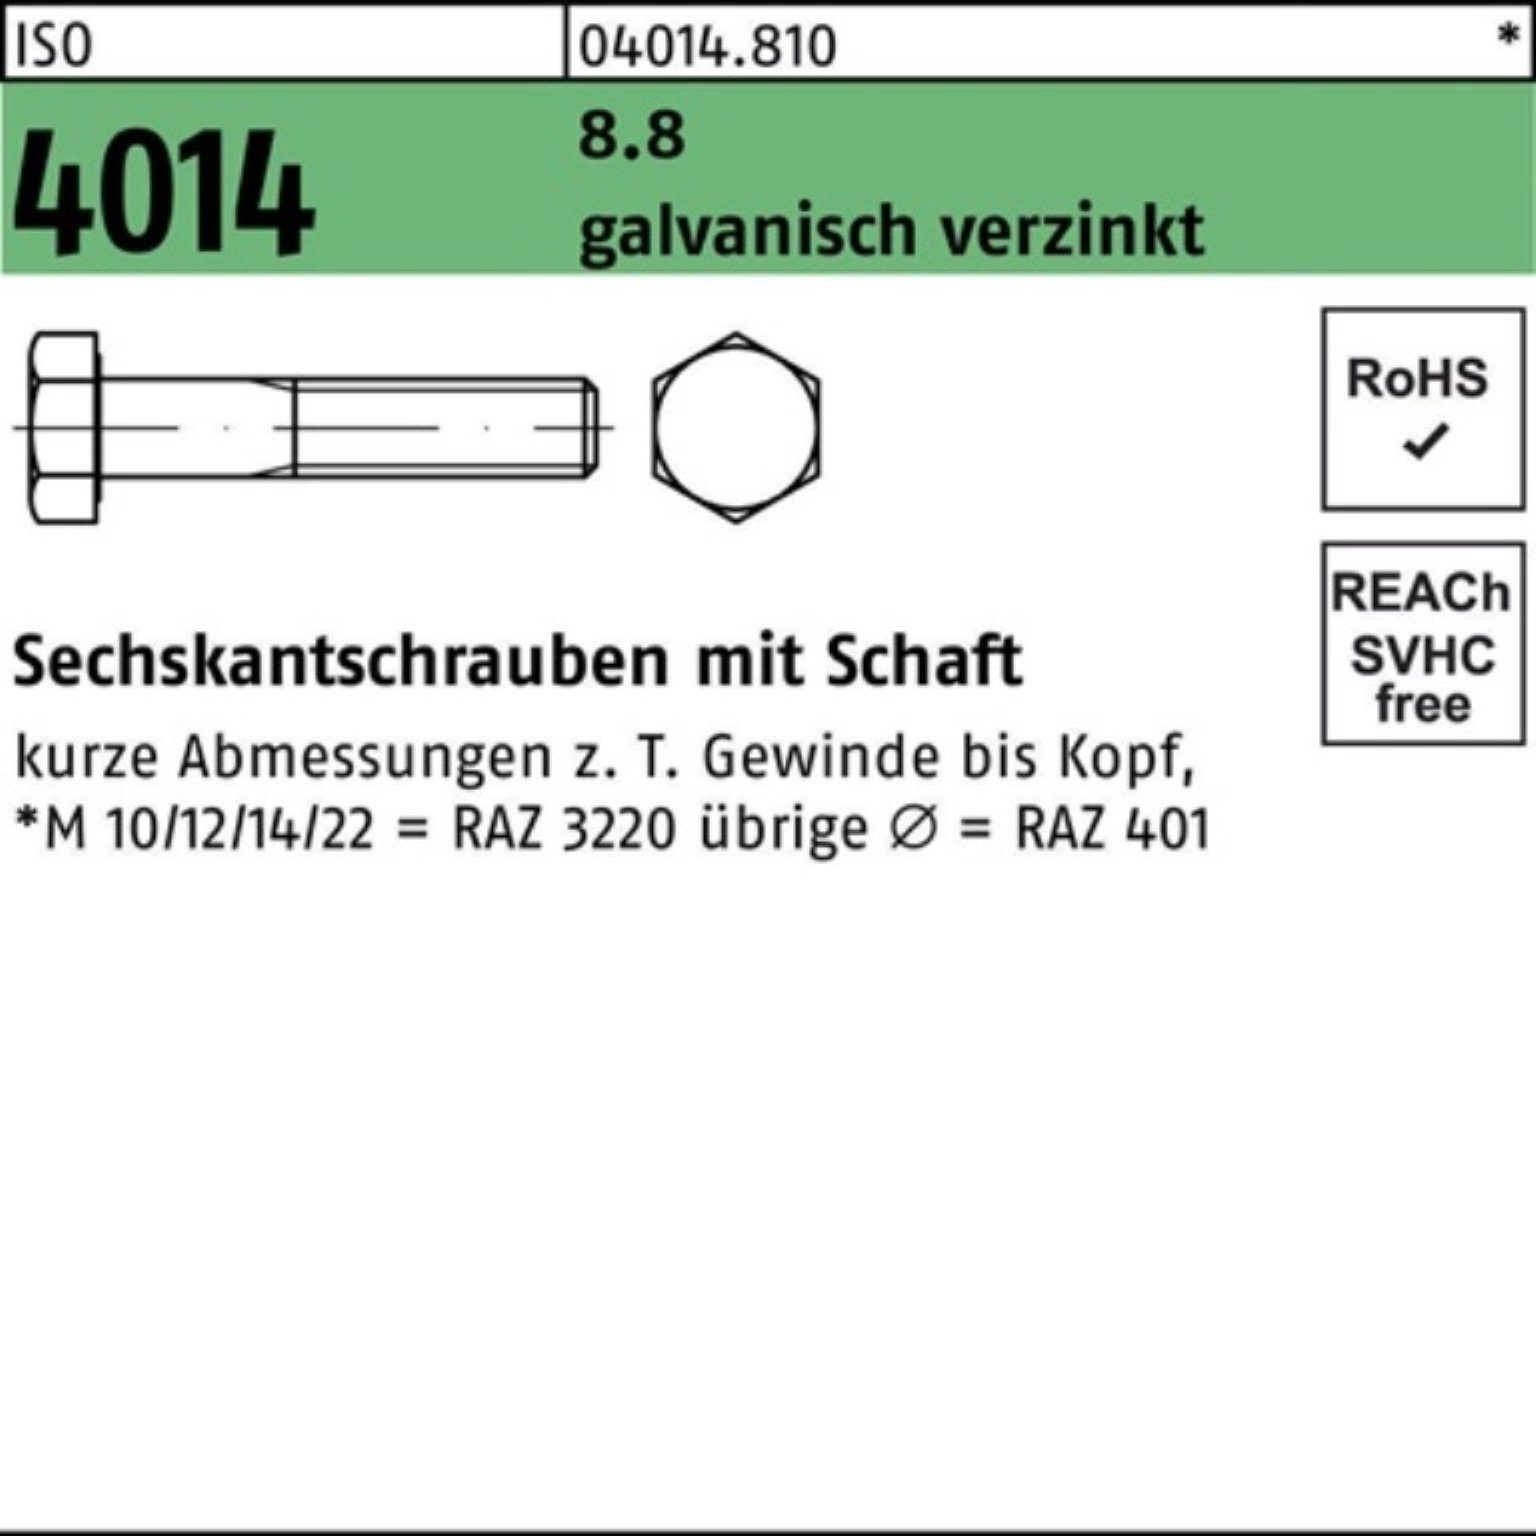 ISO Bufab Schaft 2 galv.verz. 4014 110 100er 8.8 M18x Sechskantschraube Pack Sechskantschraube